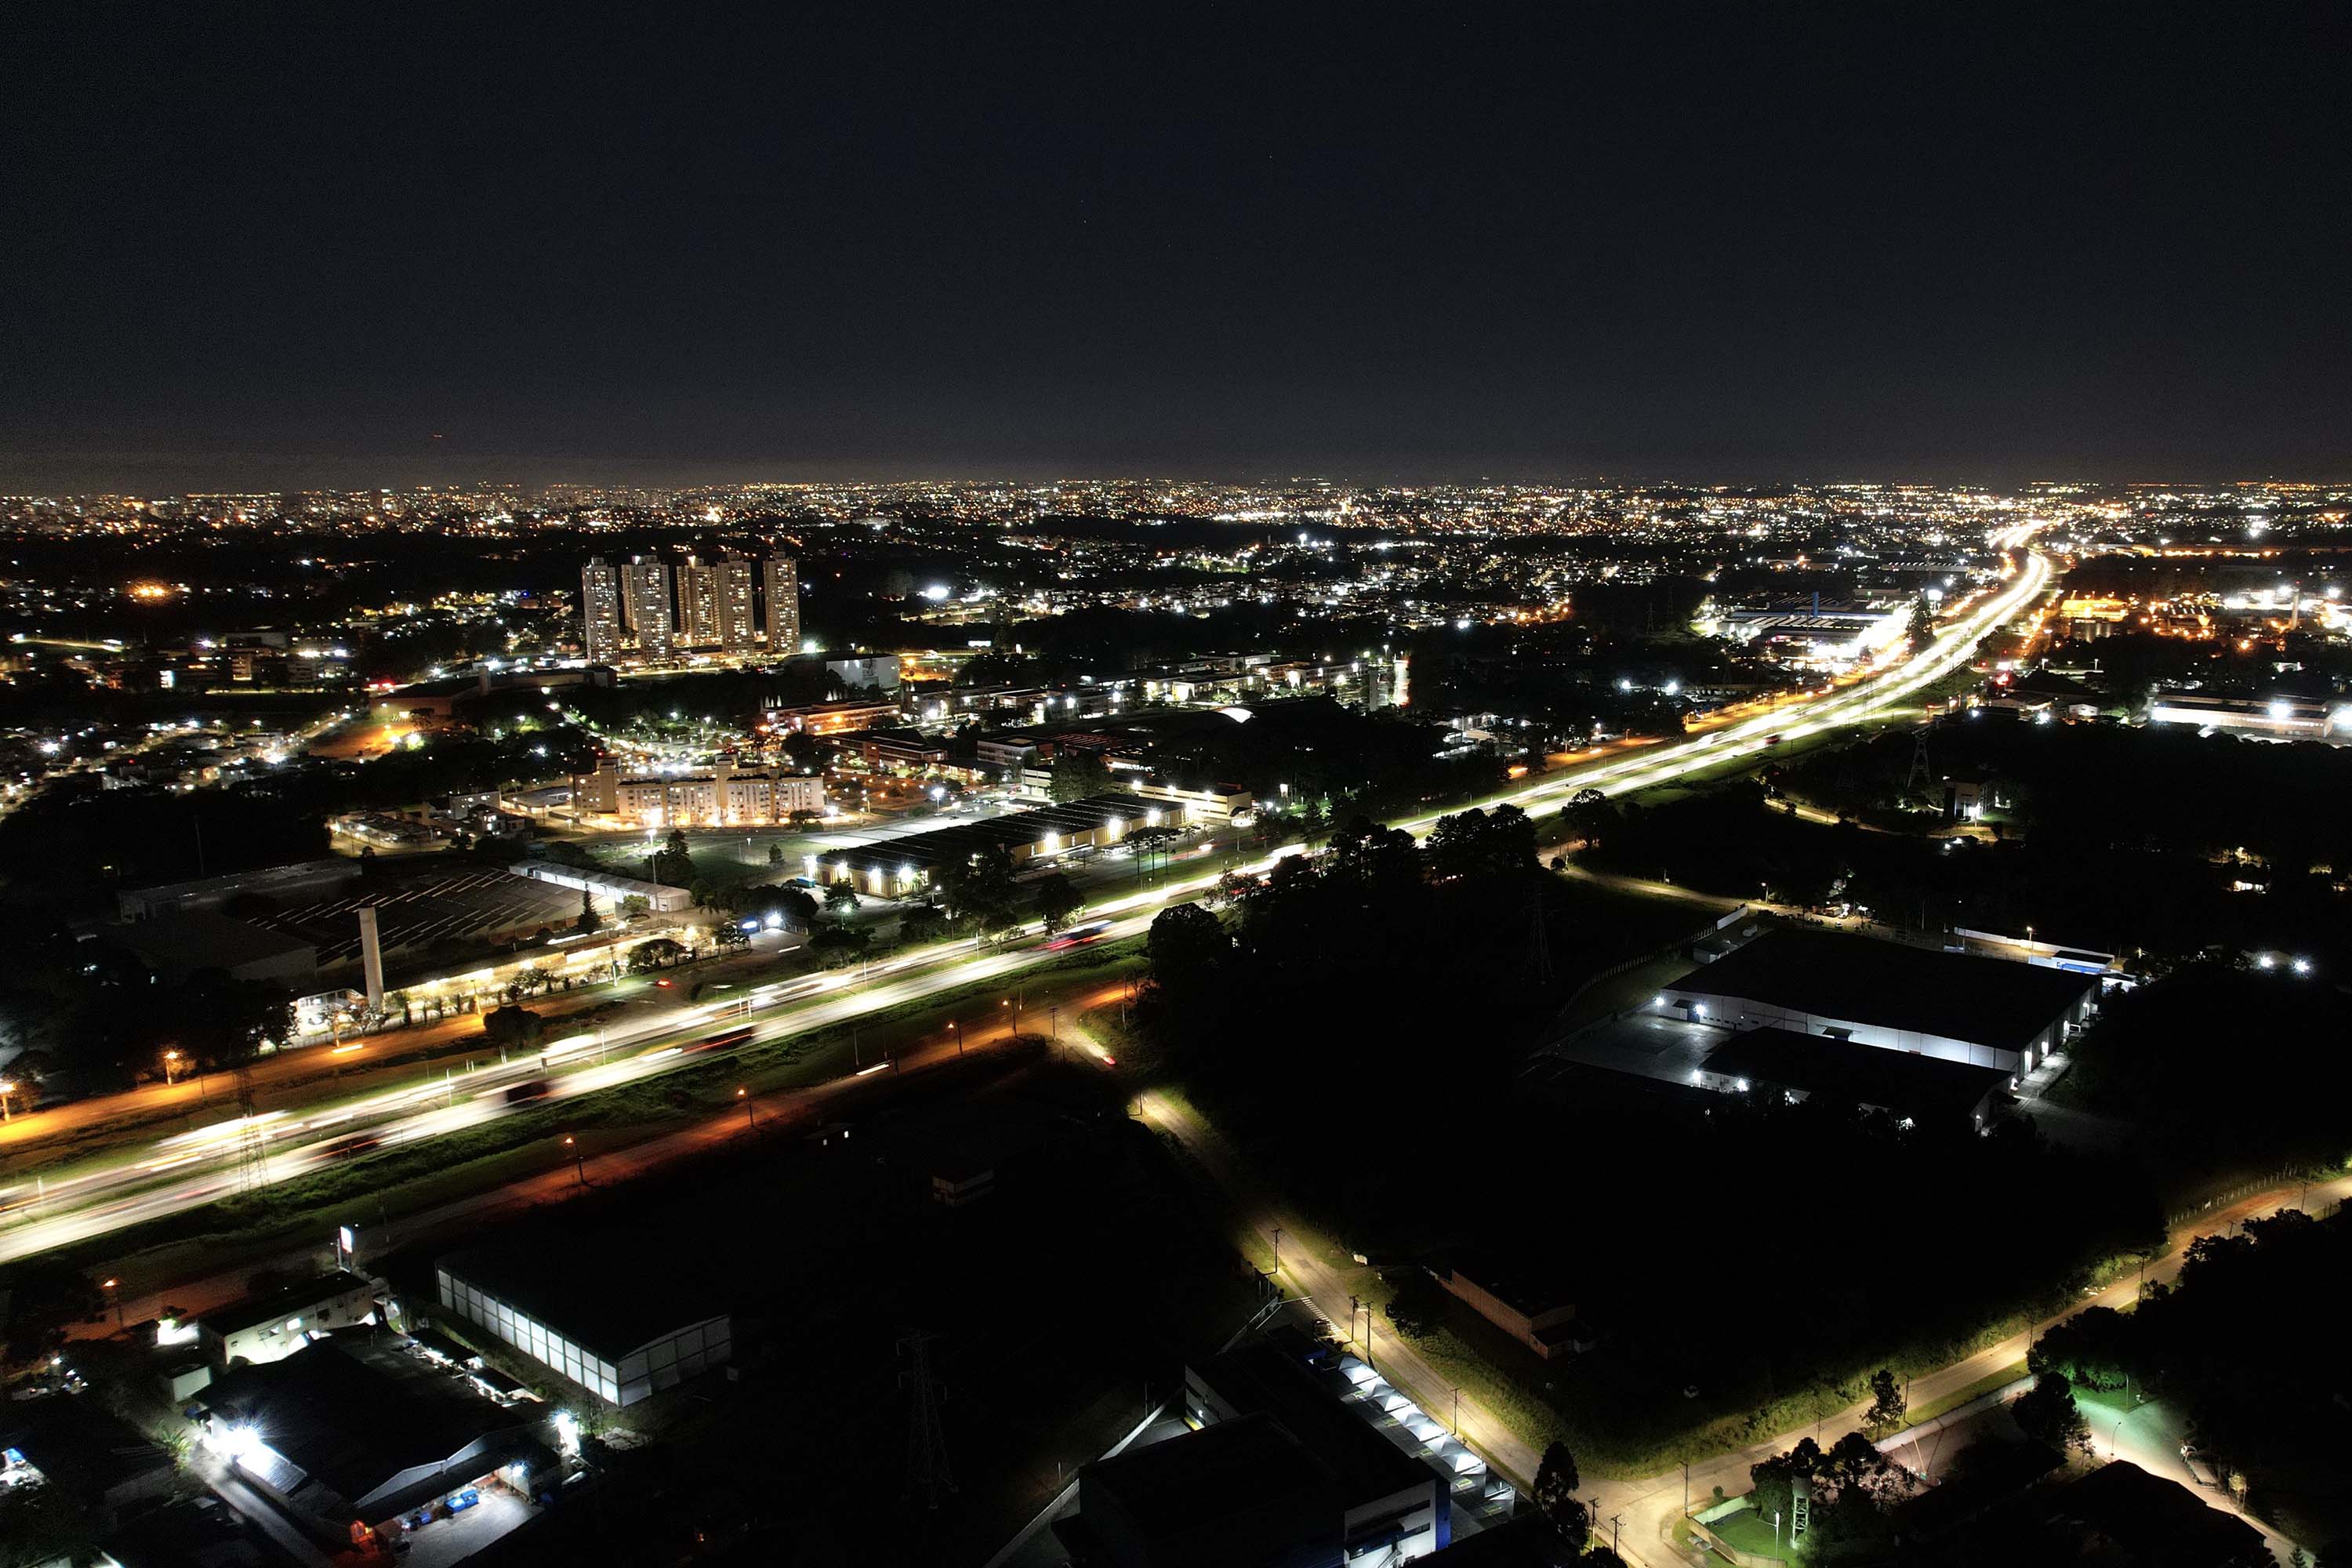 Iluminação do Contorno Sul de Curitiba